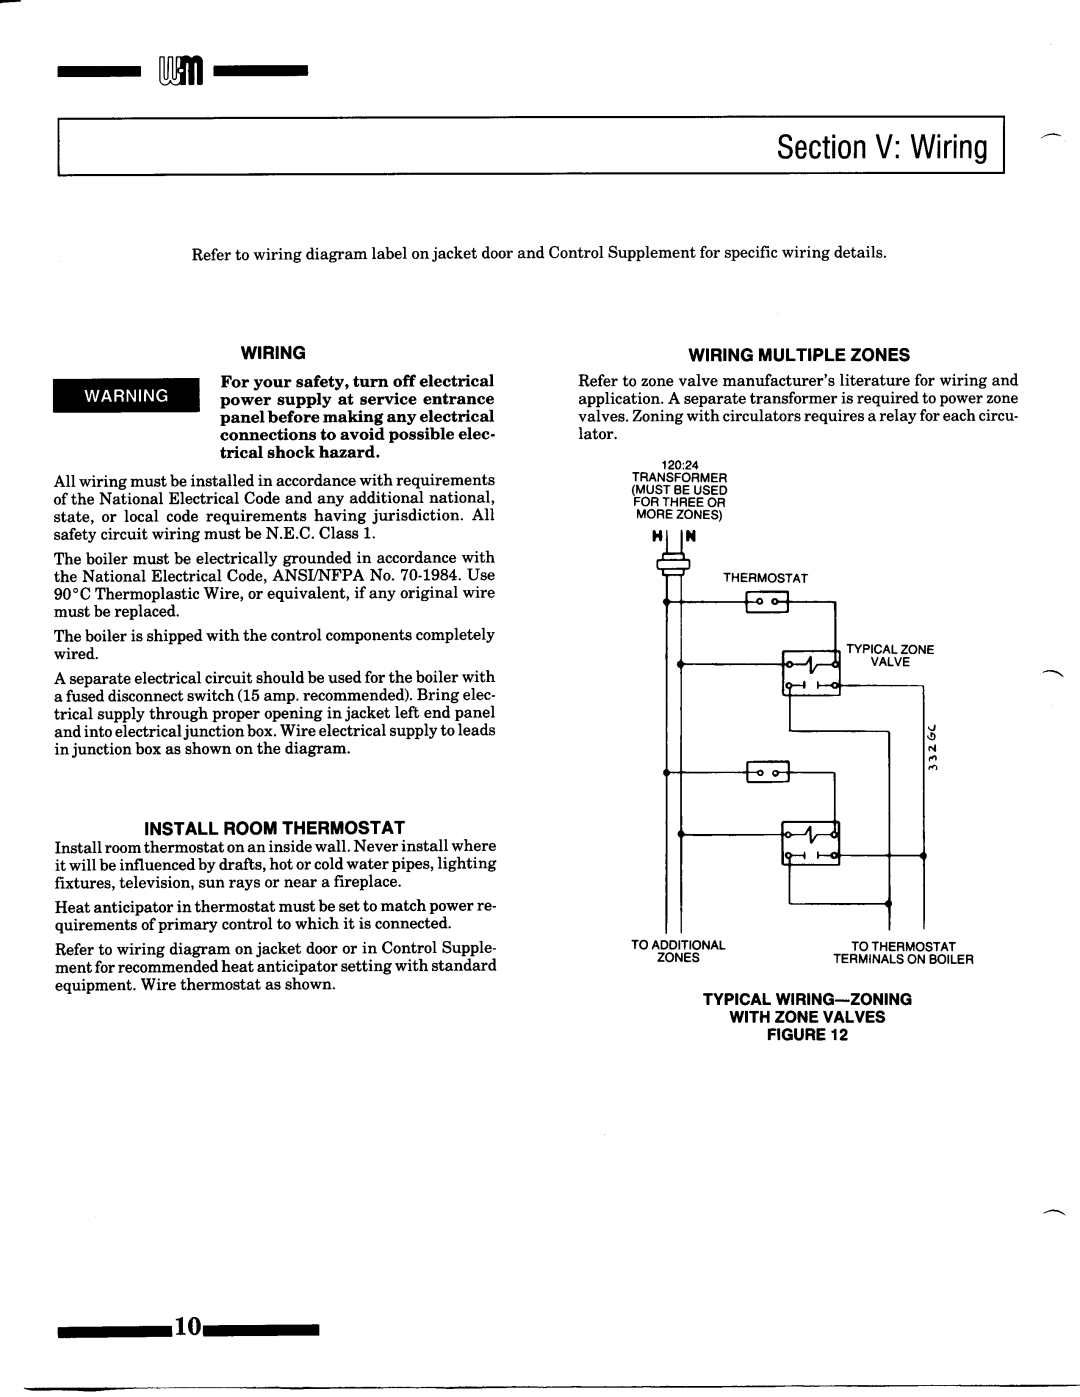 Weil-McLain P-CG (Series 9), CGM (Series 9) manual 